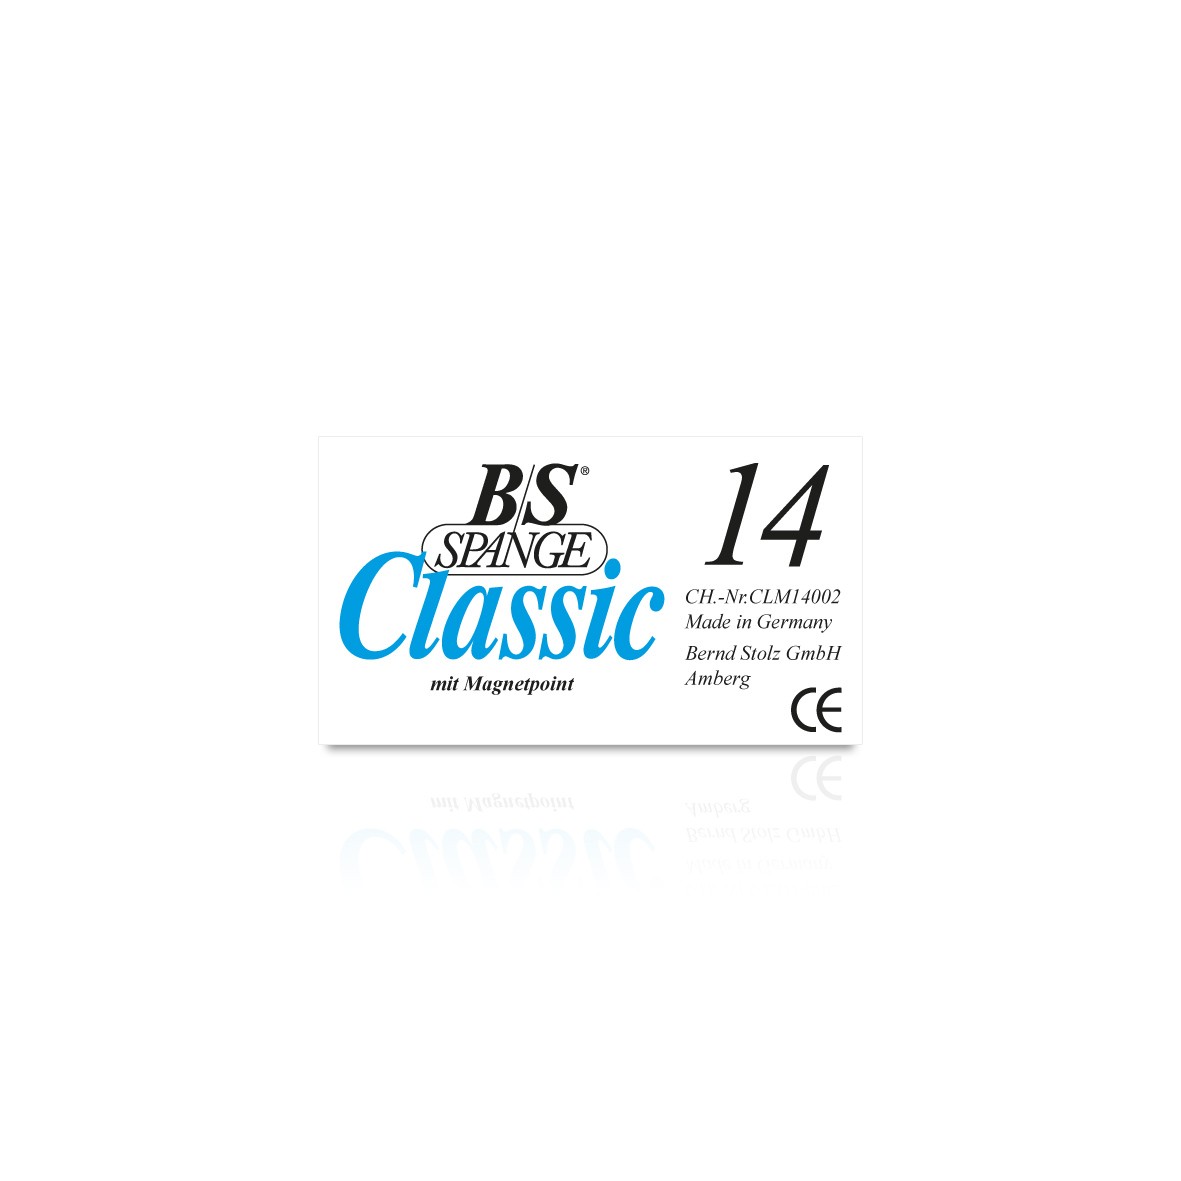 B/S Classic Spange Magnet Größe 14 - 24 wählbar